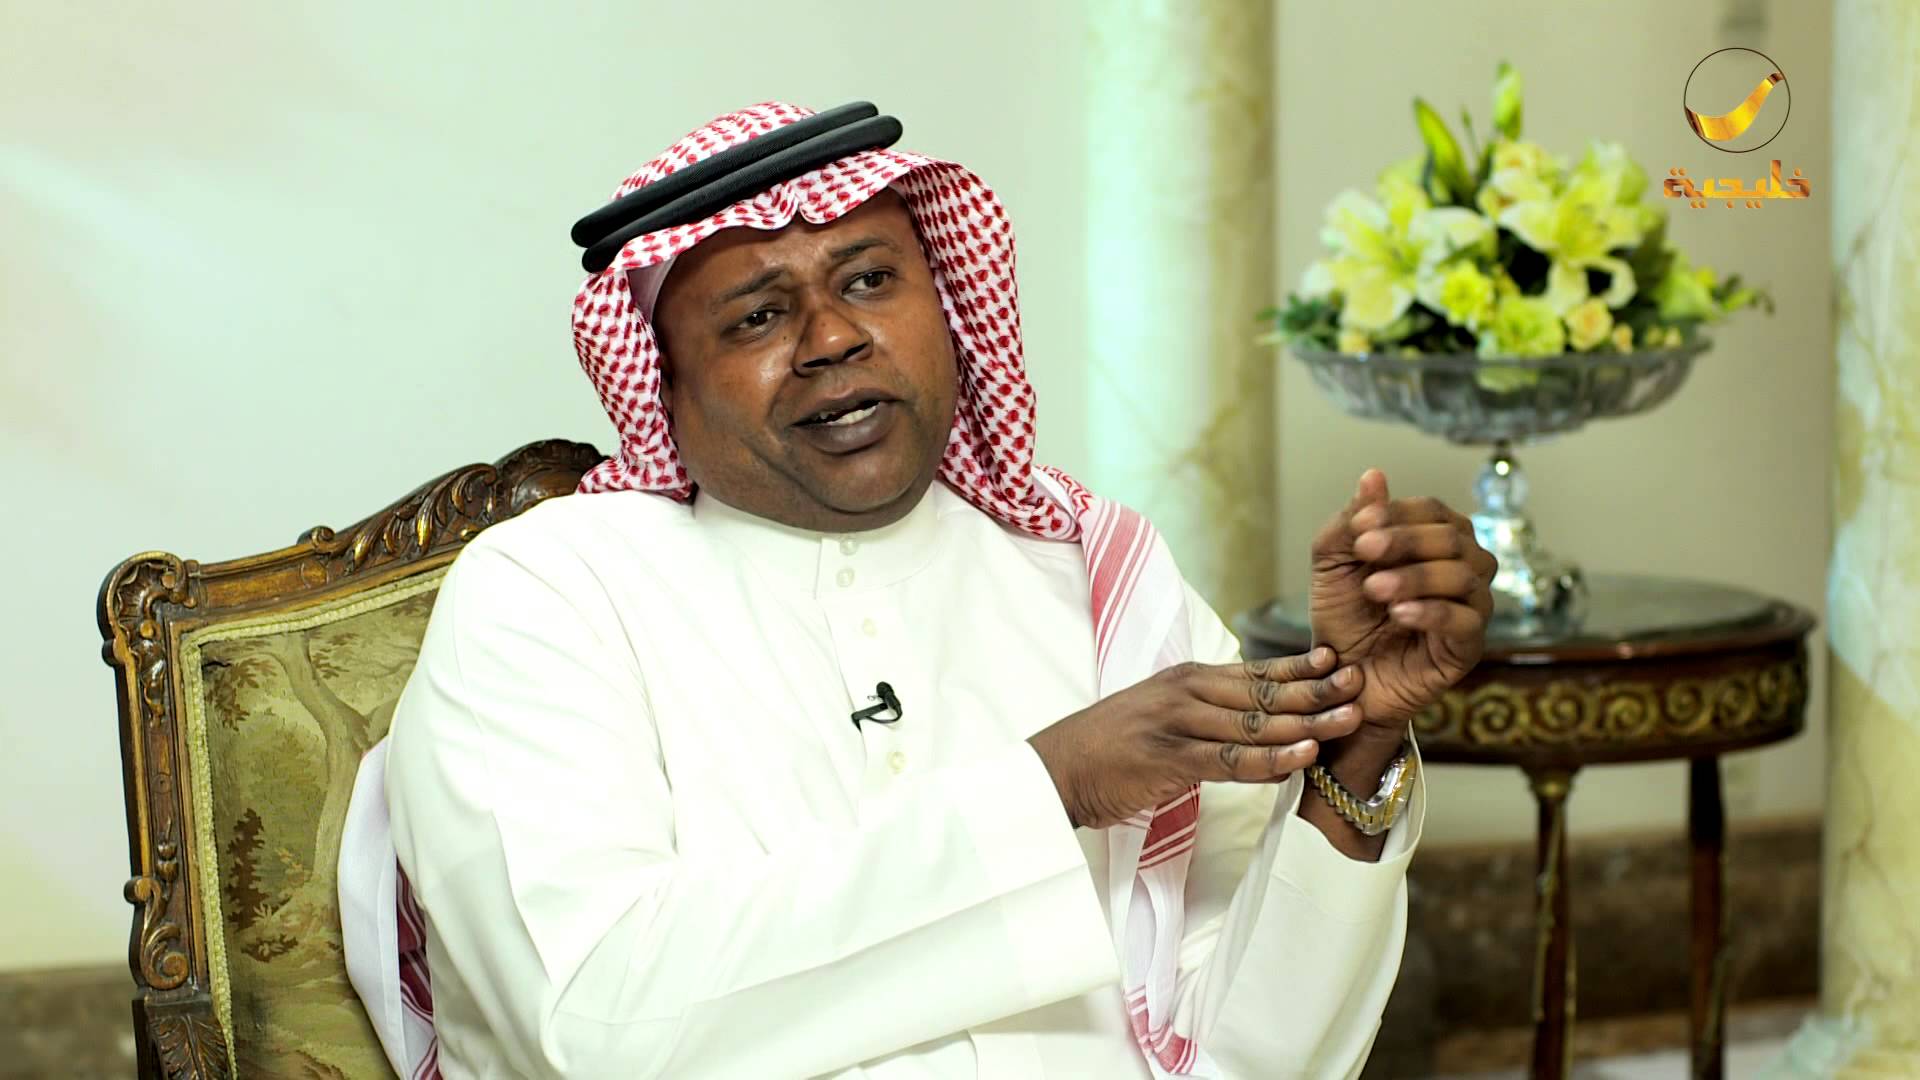 العويران: آل الشيخ صاحب النقلة النوعية في الرياضة السعودية